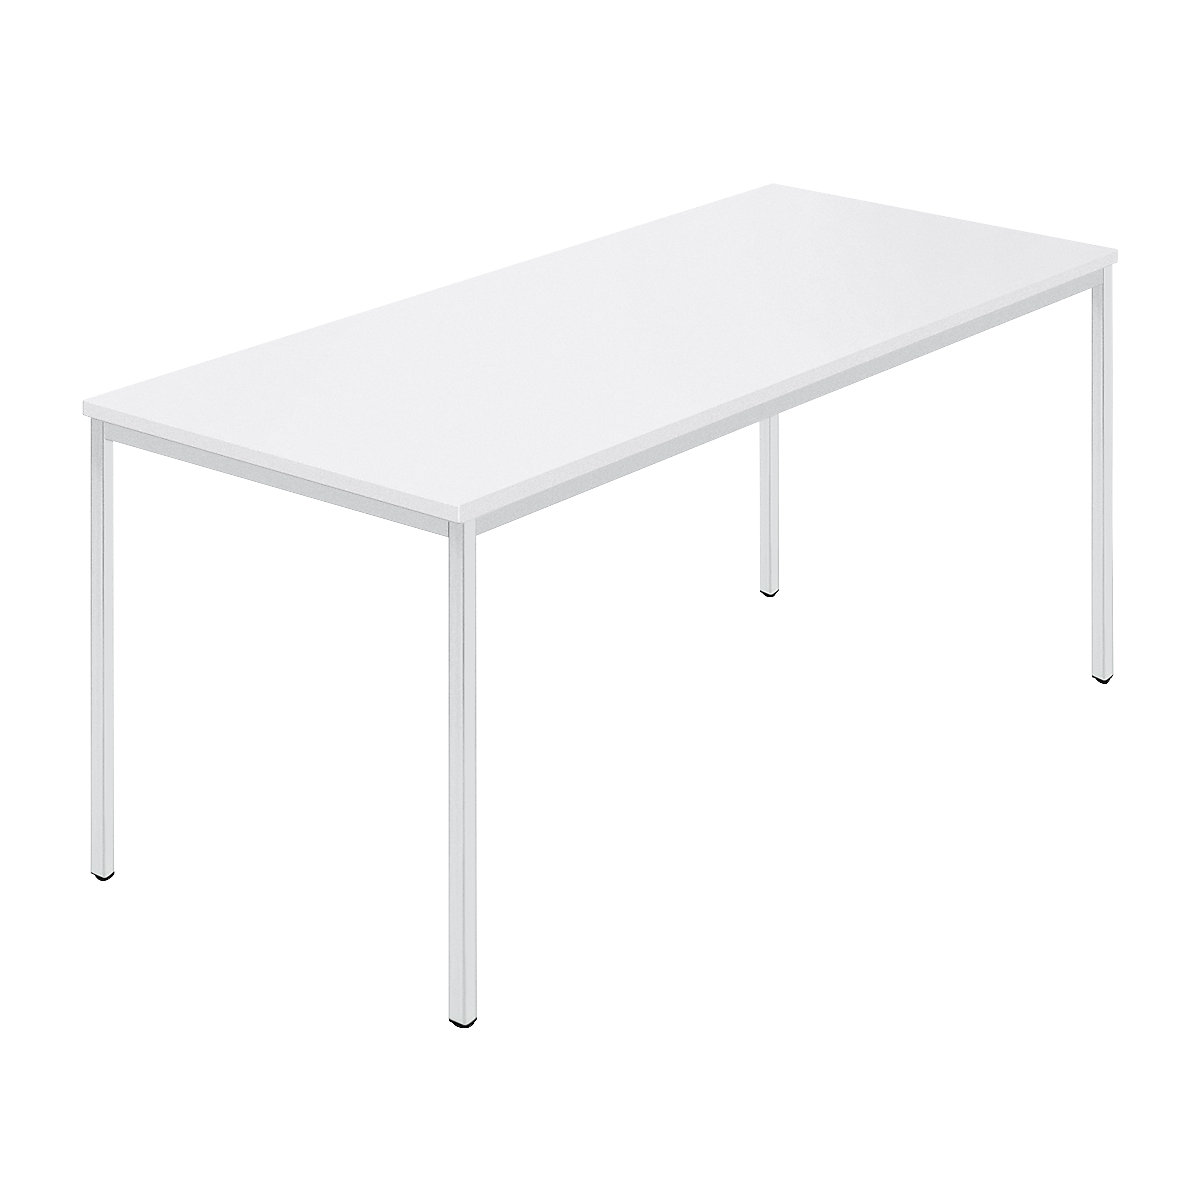 Rechthoekige tafel, vierkante buis met coating, b x d = 1600 x 800 mm, wit / grijs-5